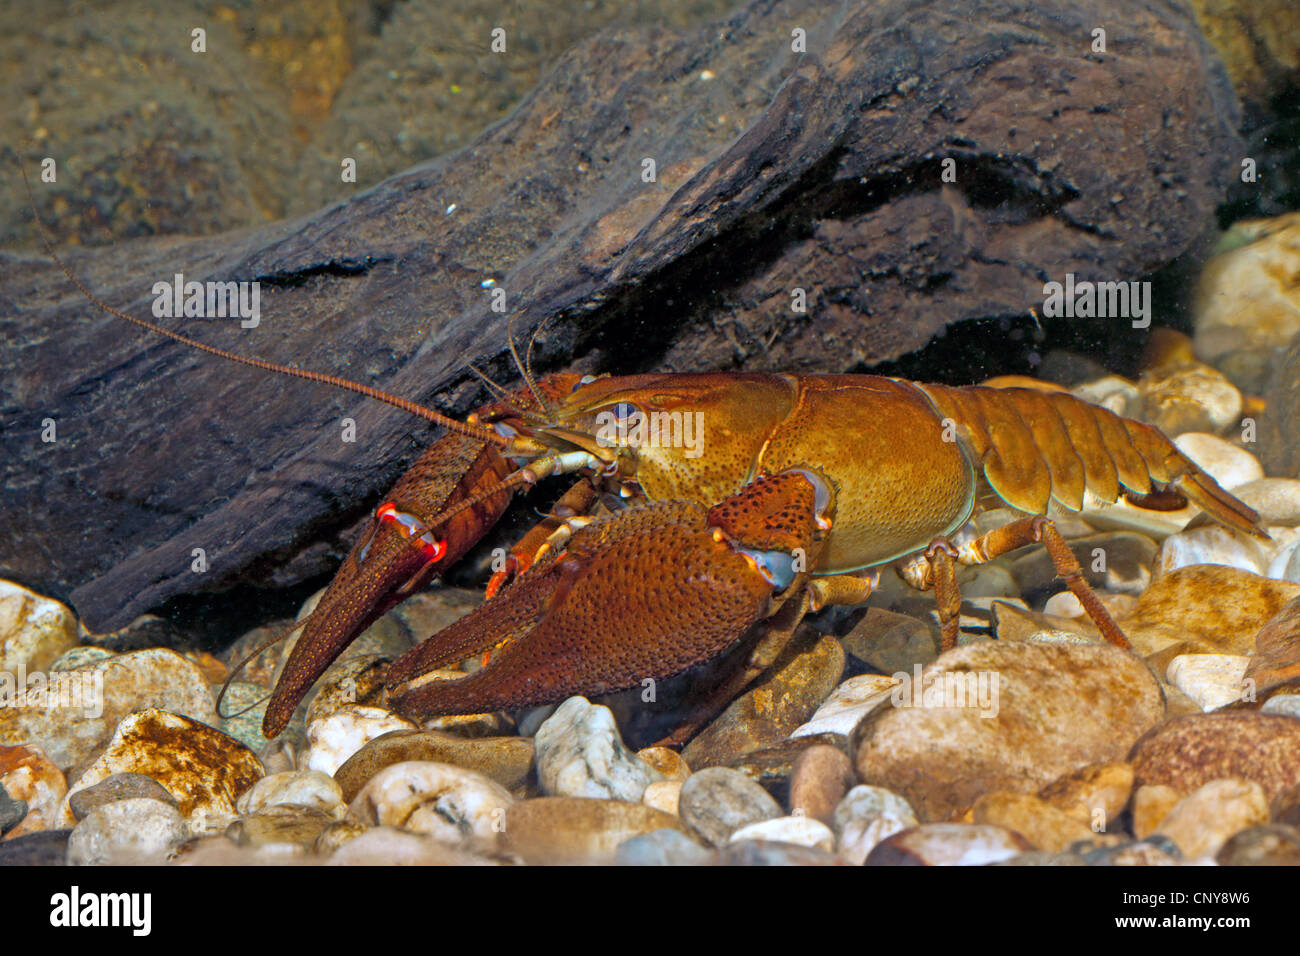 noble crayfish (Astacus astacus), male on pebble ground Stock Photo